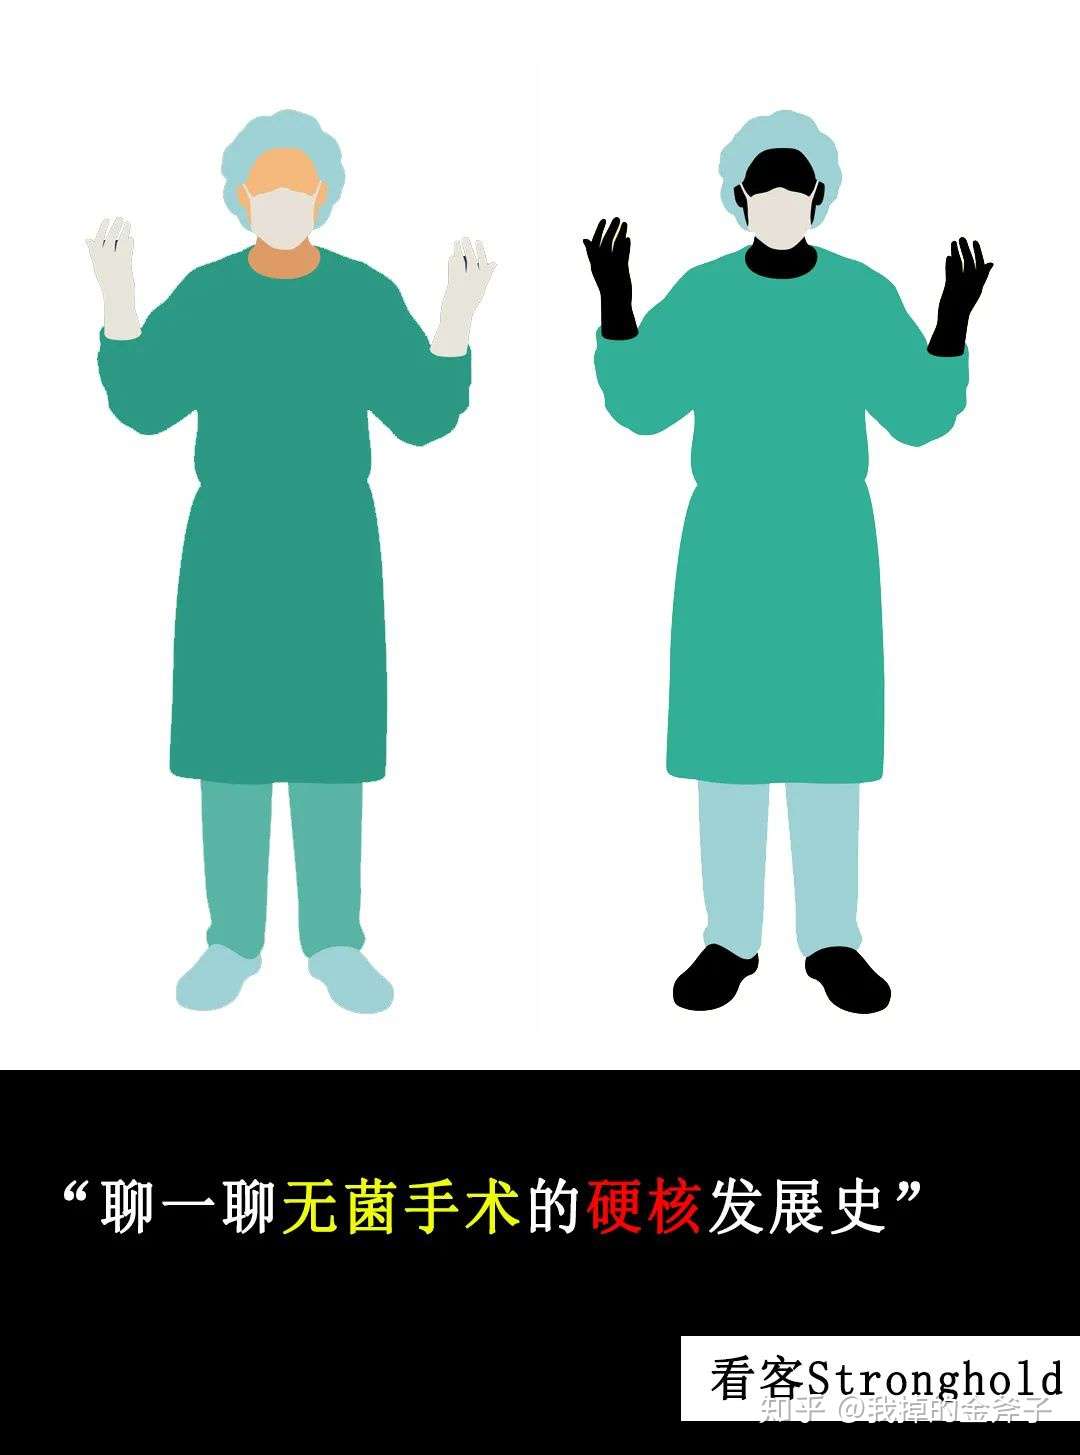 为什么外科医生做手术时要举着双手 知乎